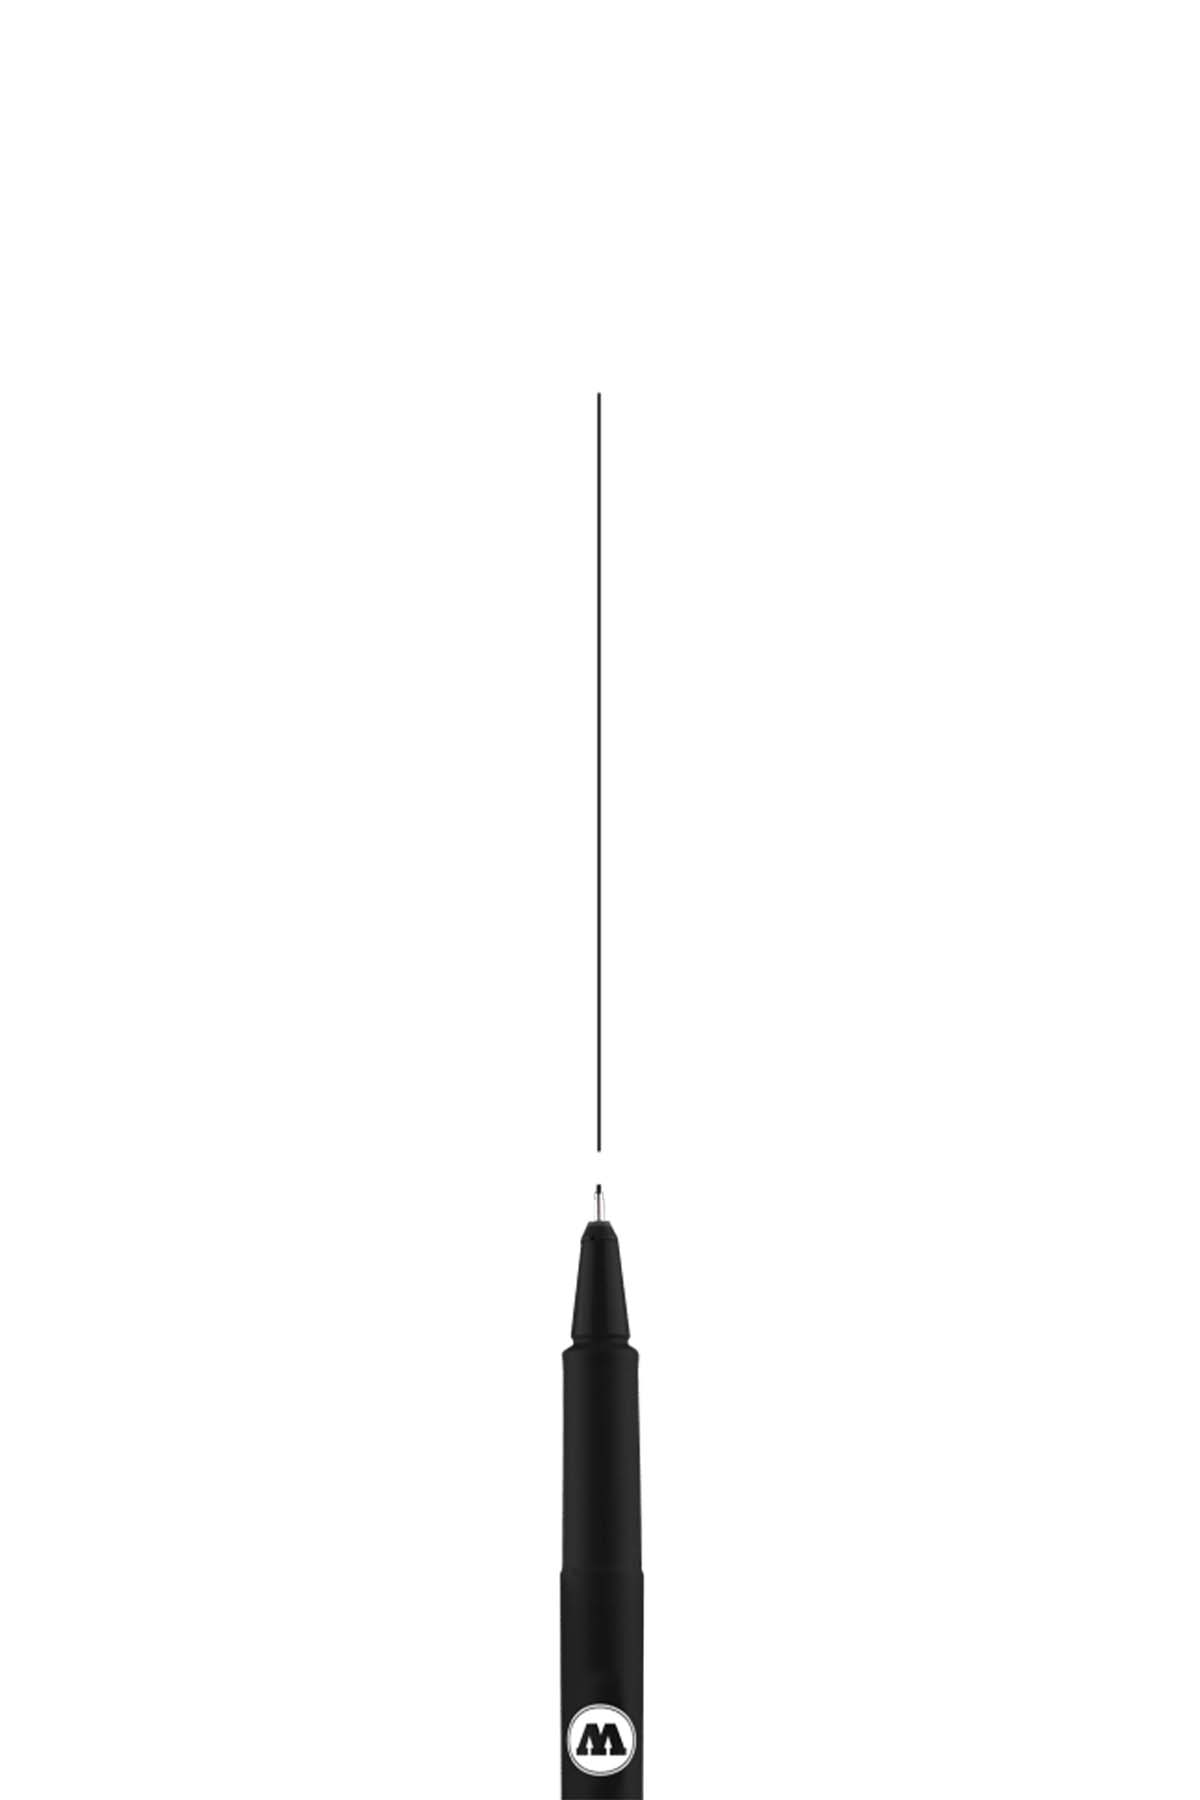 Molotow BLACKLINER Marker 0.2mm